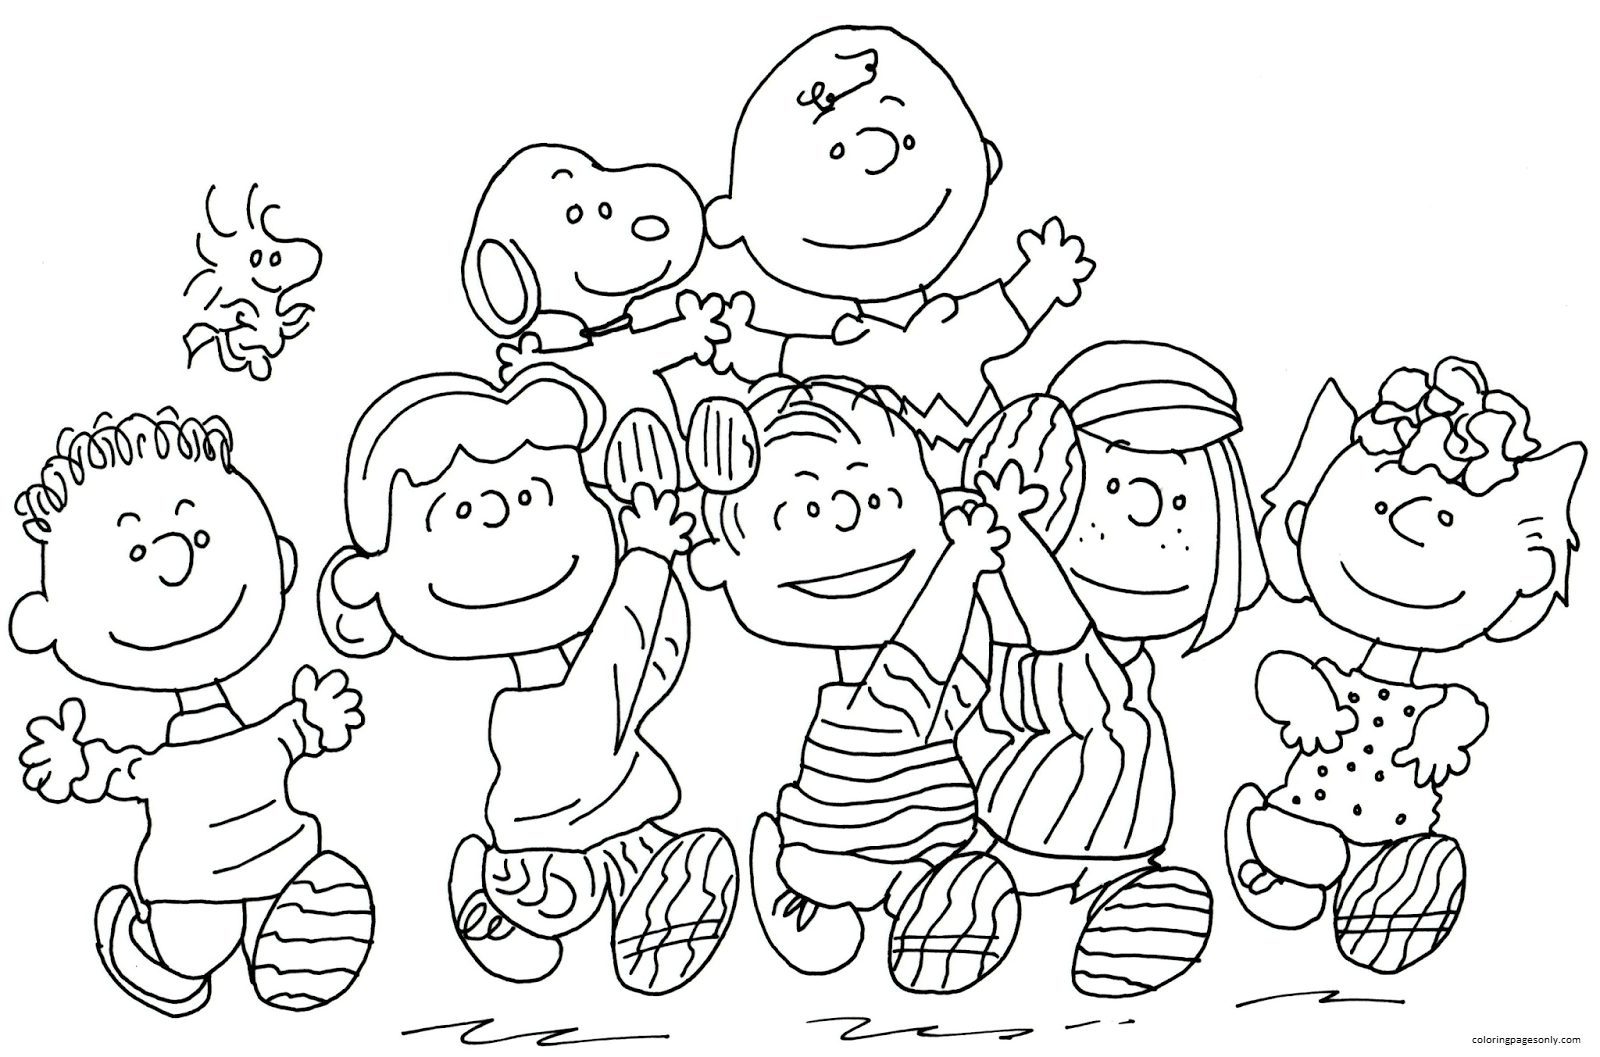 Pagina da colorare di Charlie Brown Snoopy e Peanuts